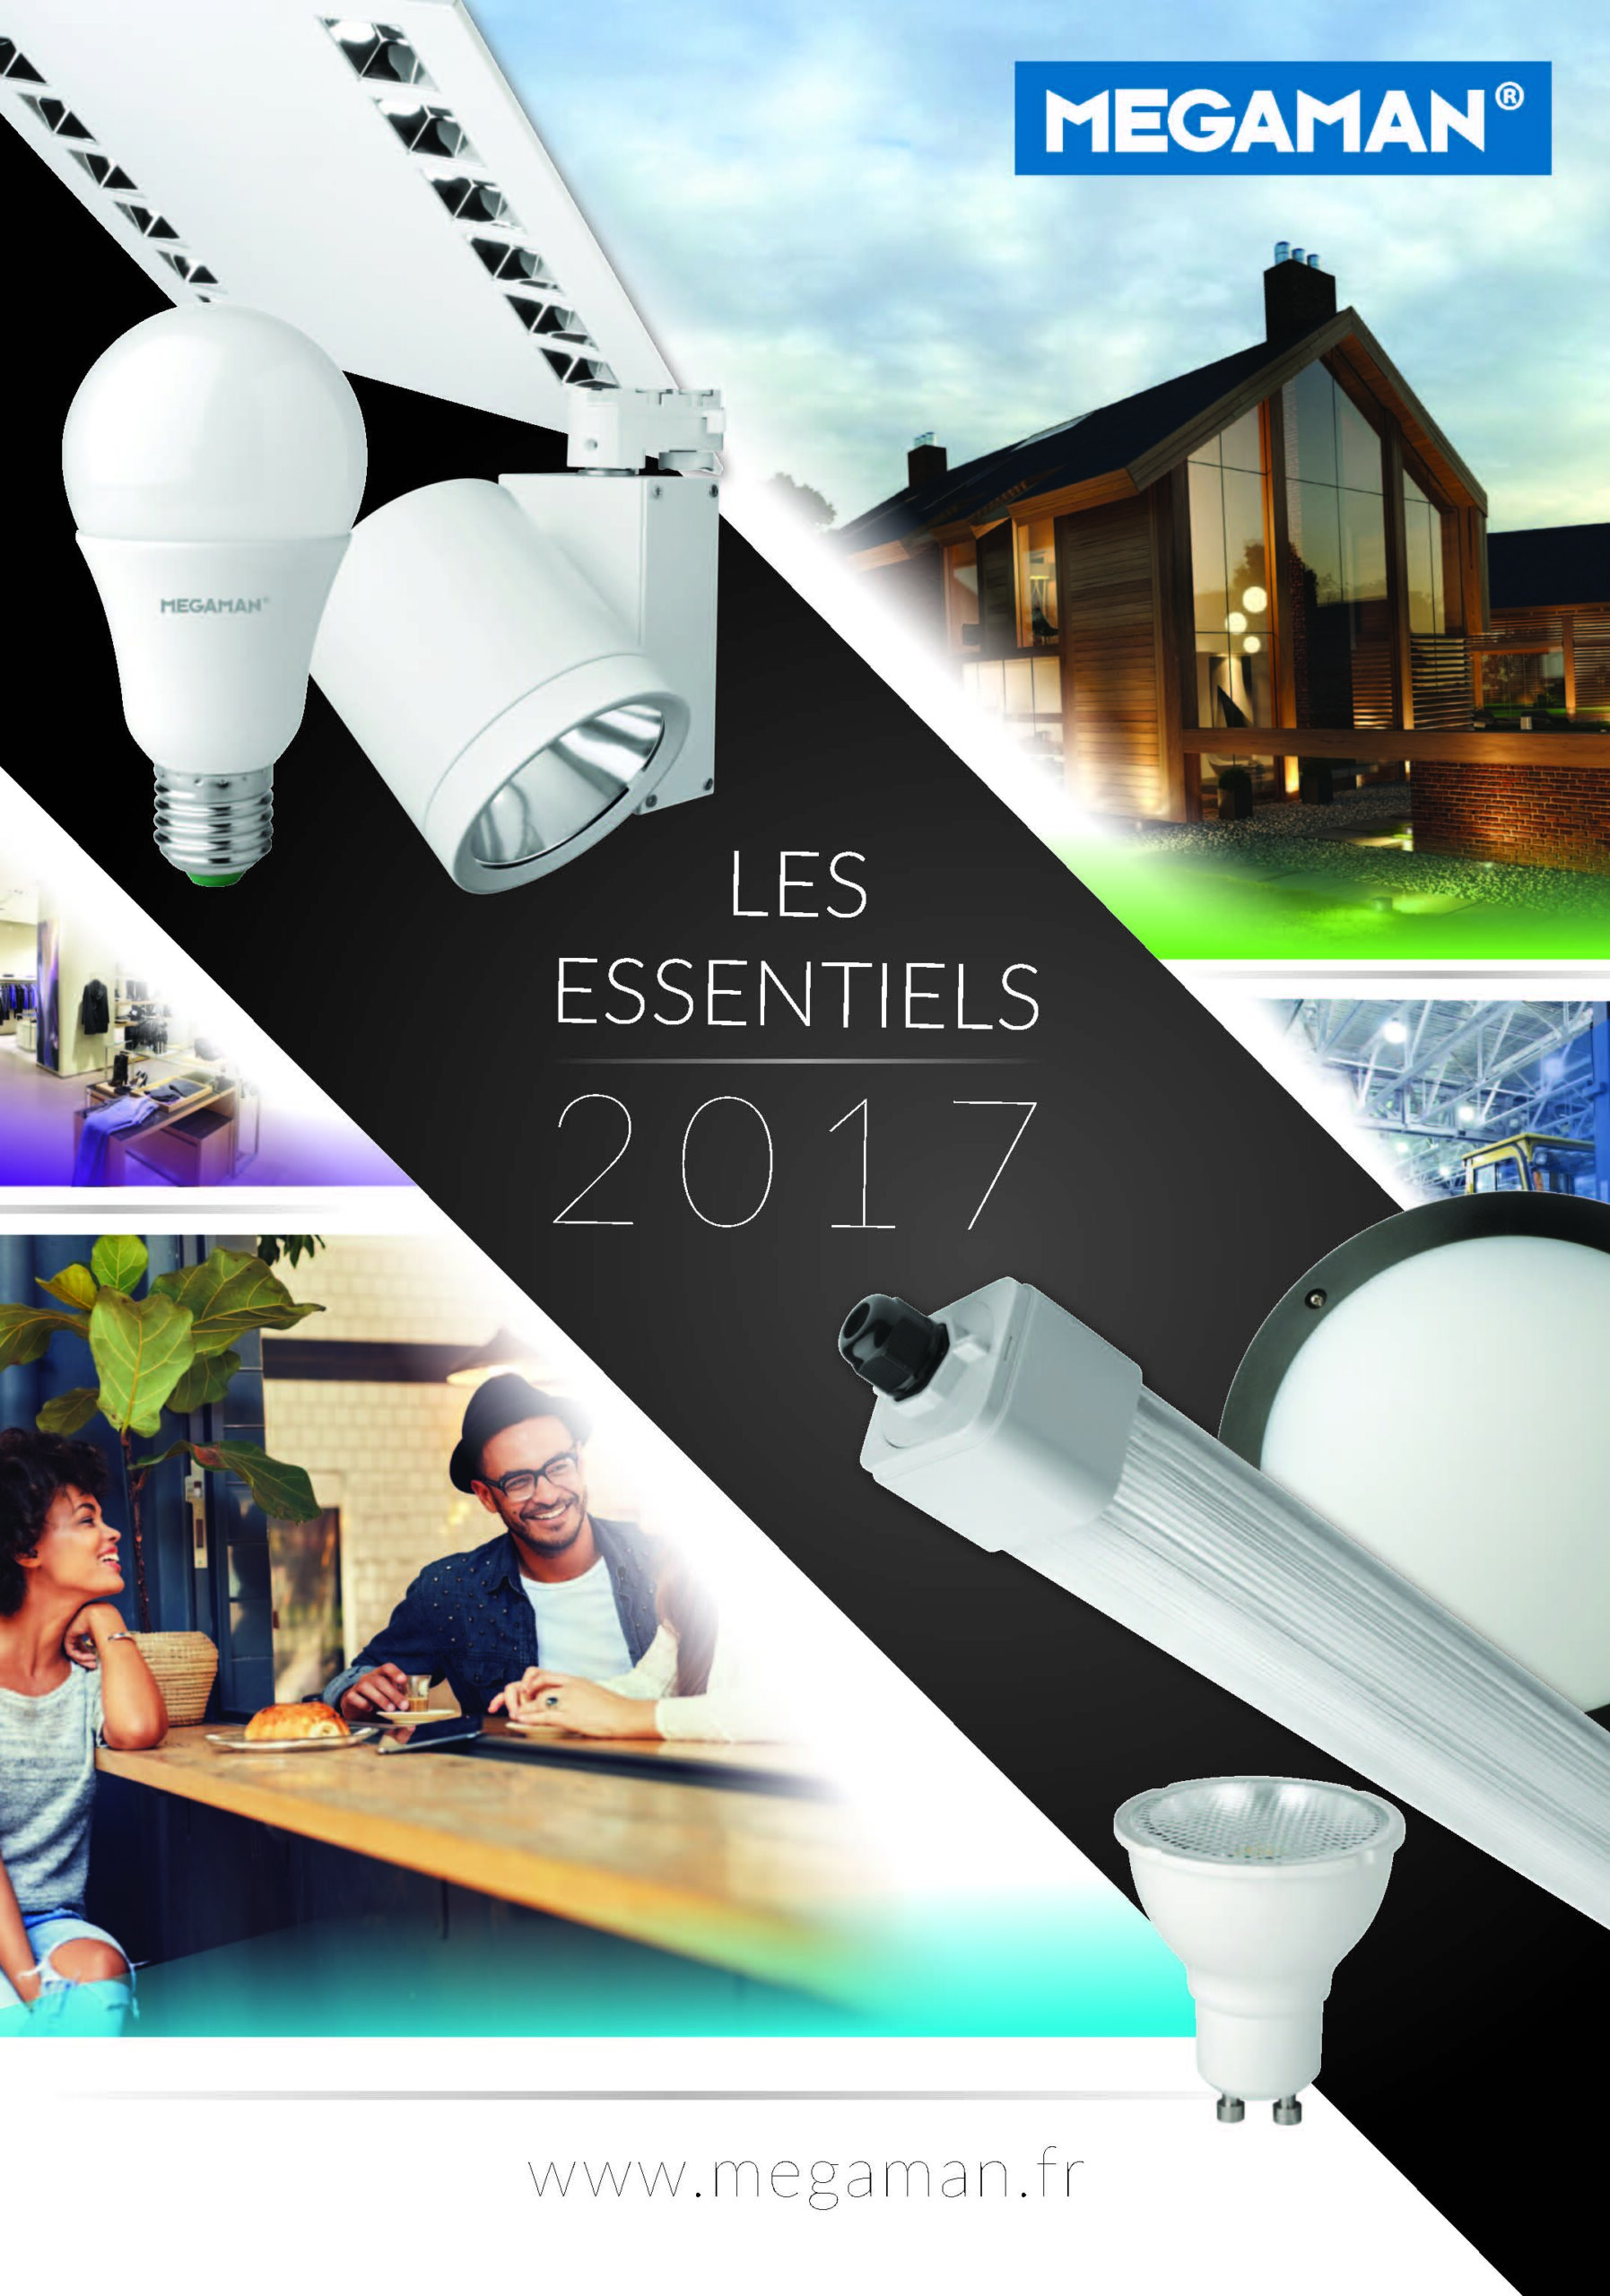 "LES ESSENTIELS 2017", LE NOUVEAU CATALOGUE DE LUMINAIRES ET LAMPES LED MEGAMAN®